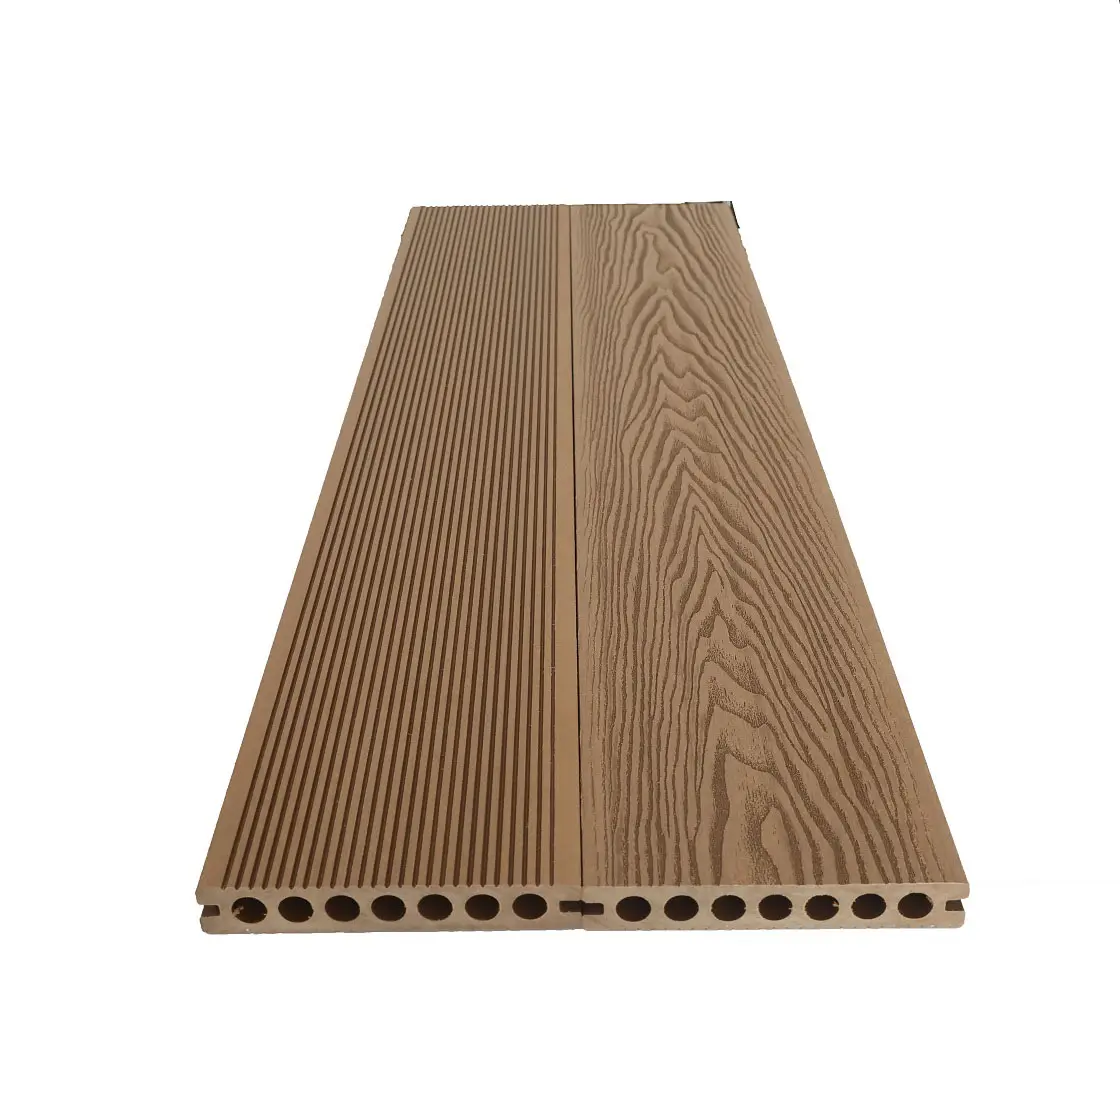 Cubierta de suelo 3D de madera en relieve, 142x22mm, precio de Pvc, madera, plástico, teca, para piscina, exterior